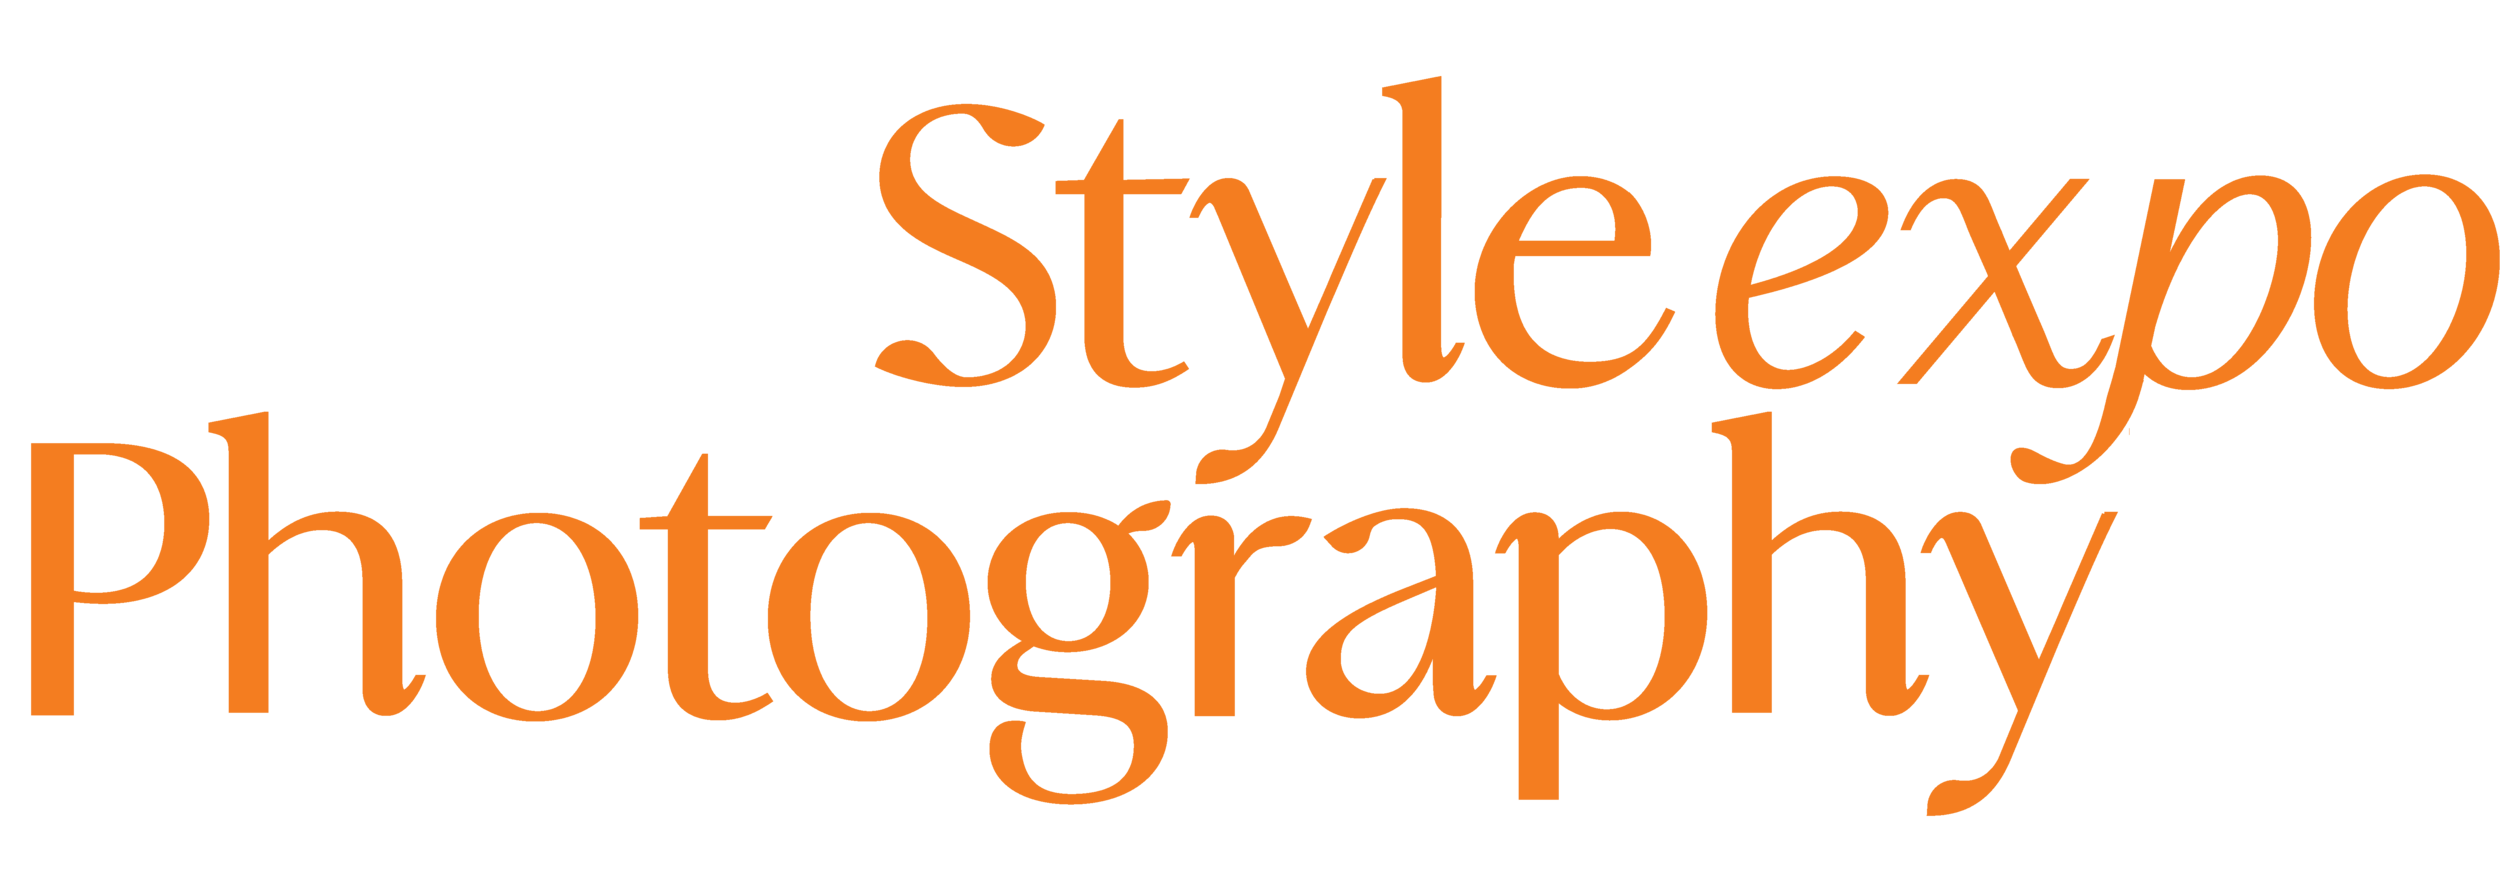  StyleExpo Photography